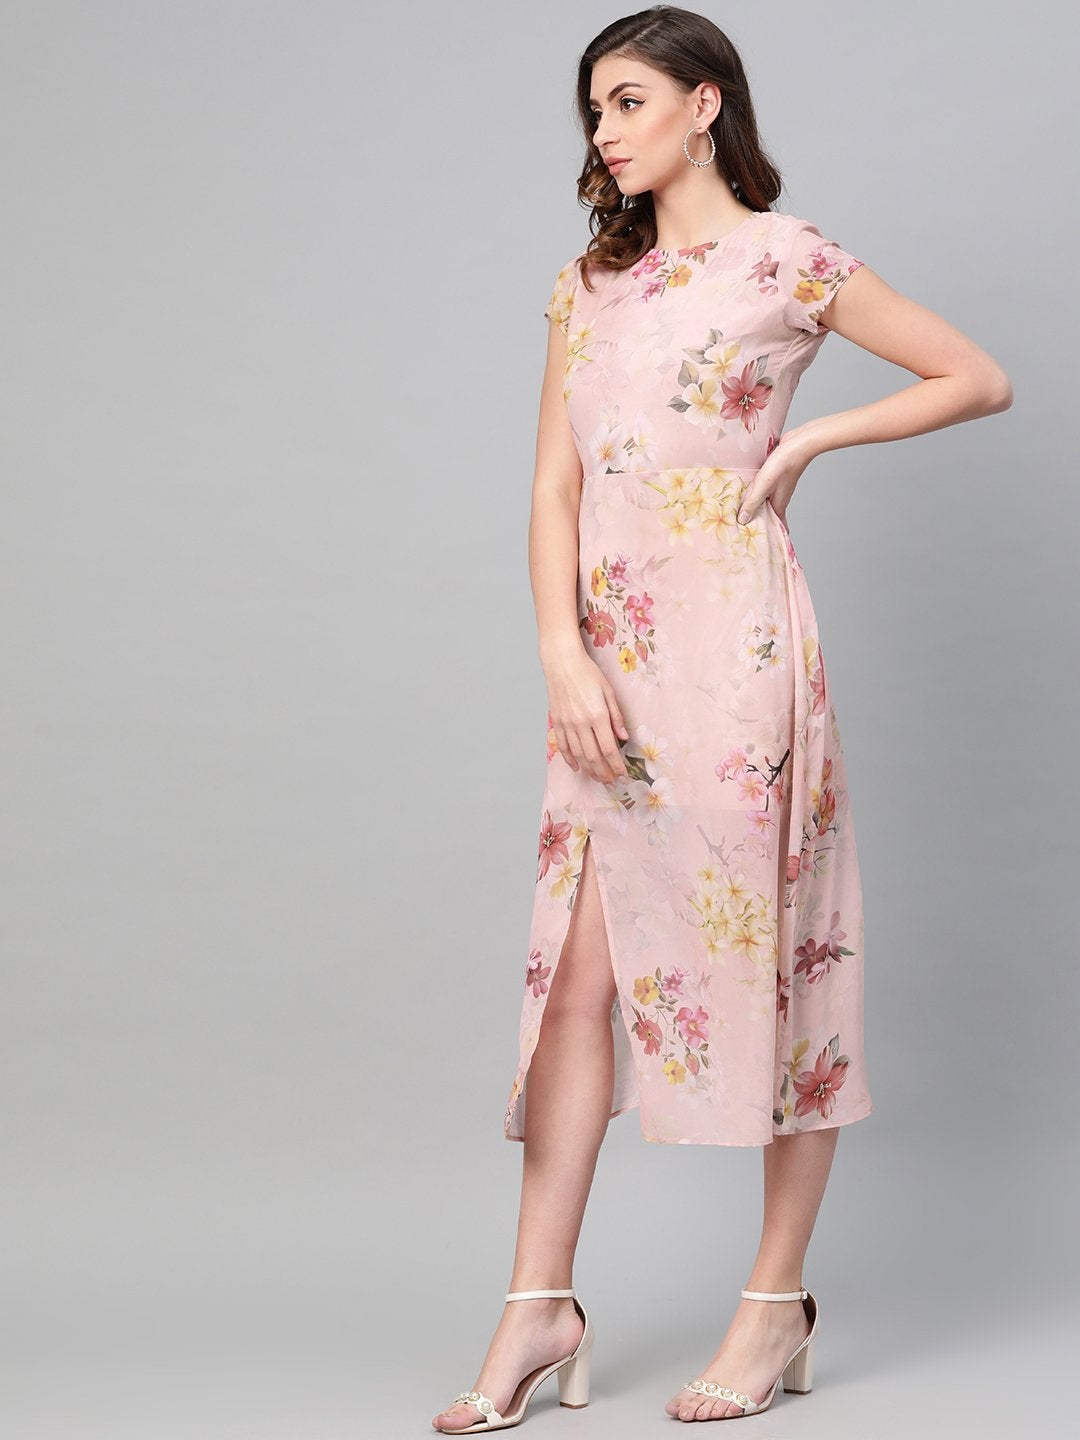 Women's Peach Floral Back Cut Out Dress - SASSAFRAS